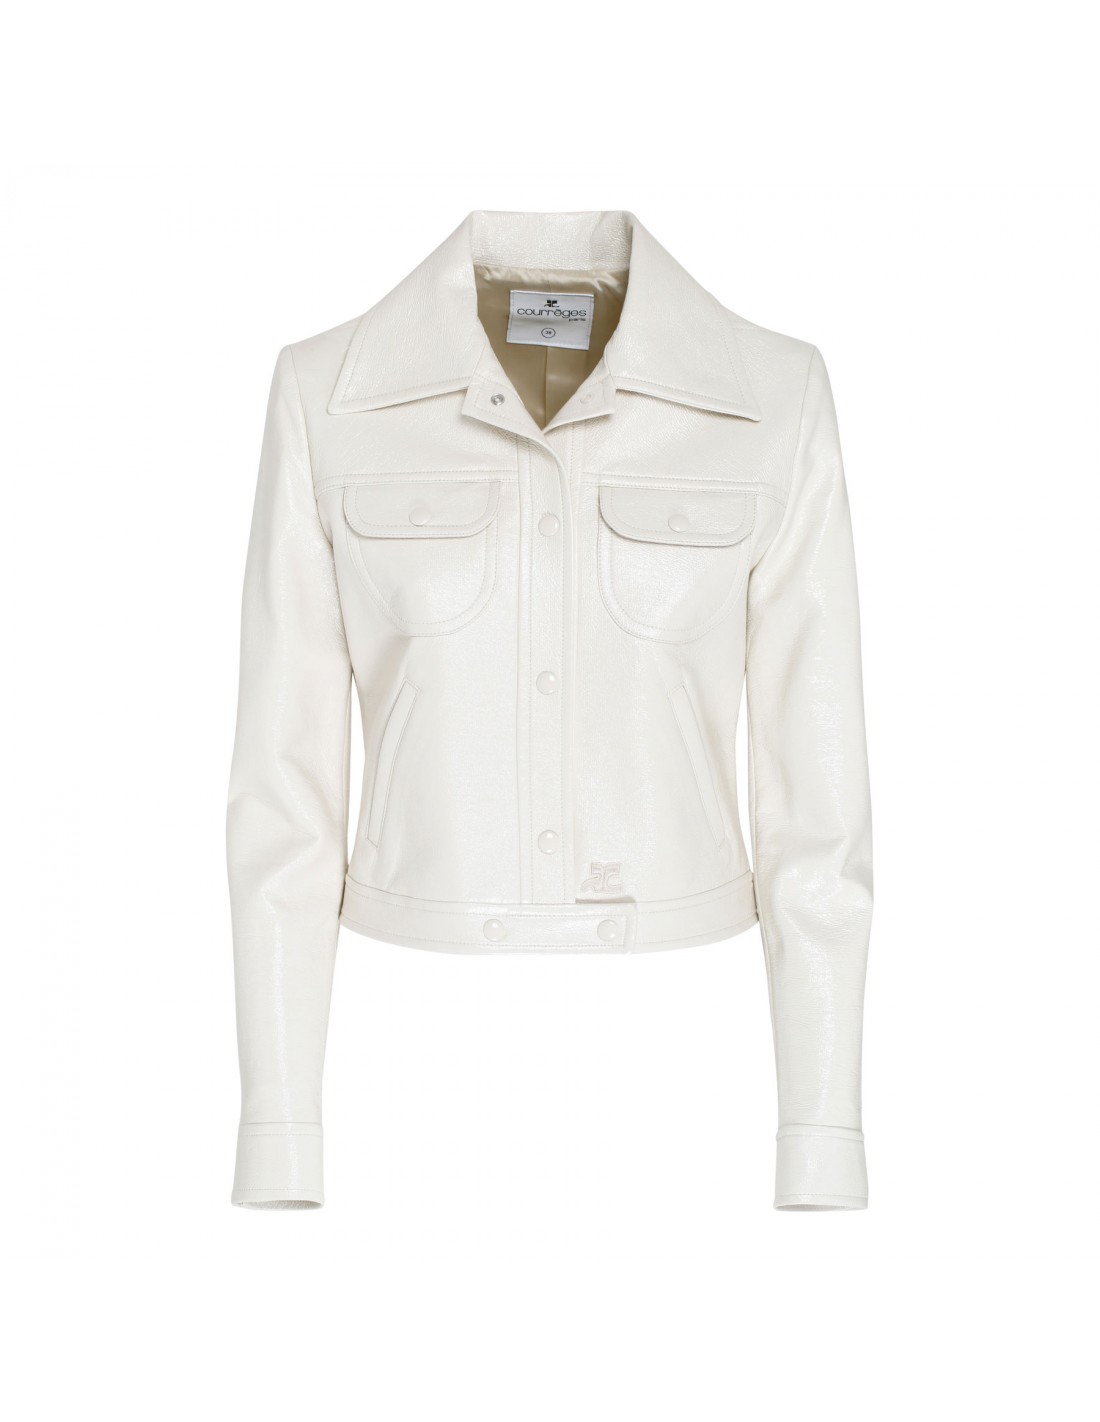 White vynil trucker jacket